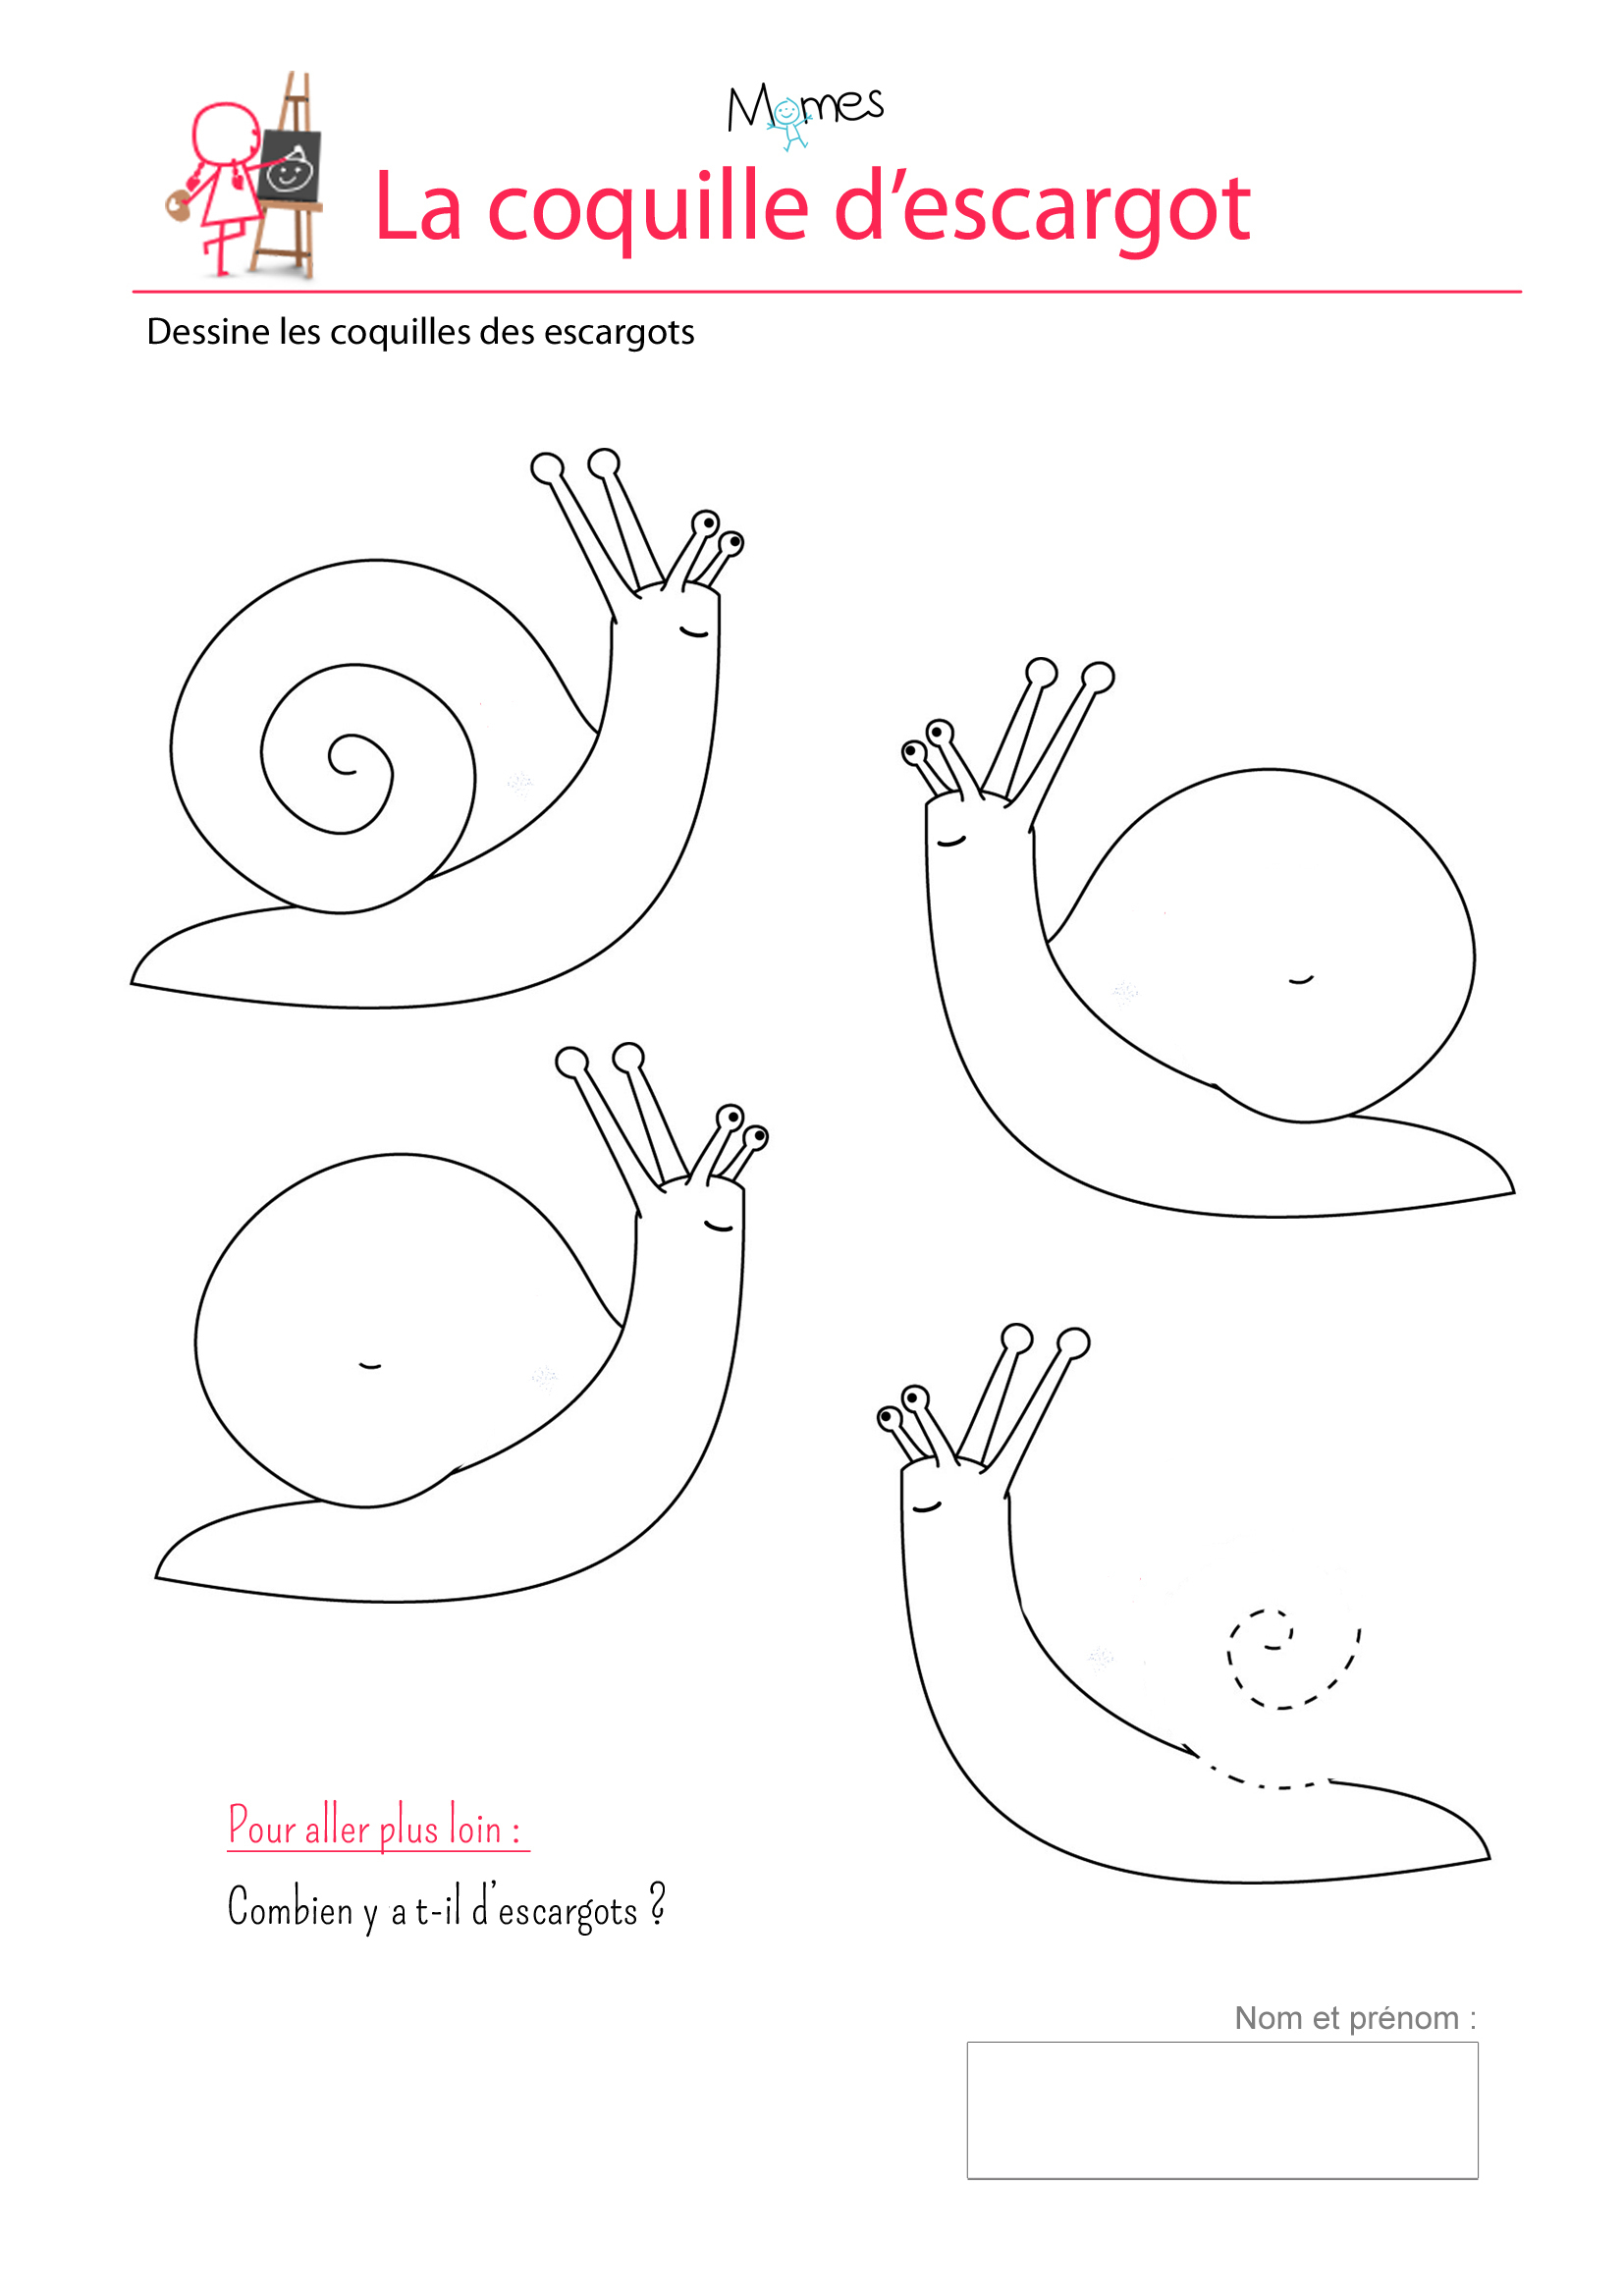 Les Coquilles D'escargots - Exercice Sur Les Spirales pour Apprendre À Dessiner En Maternelle